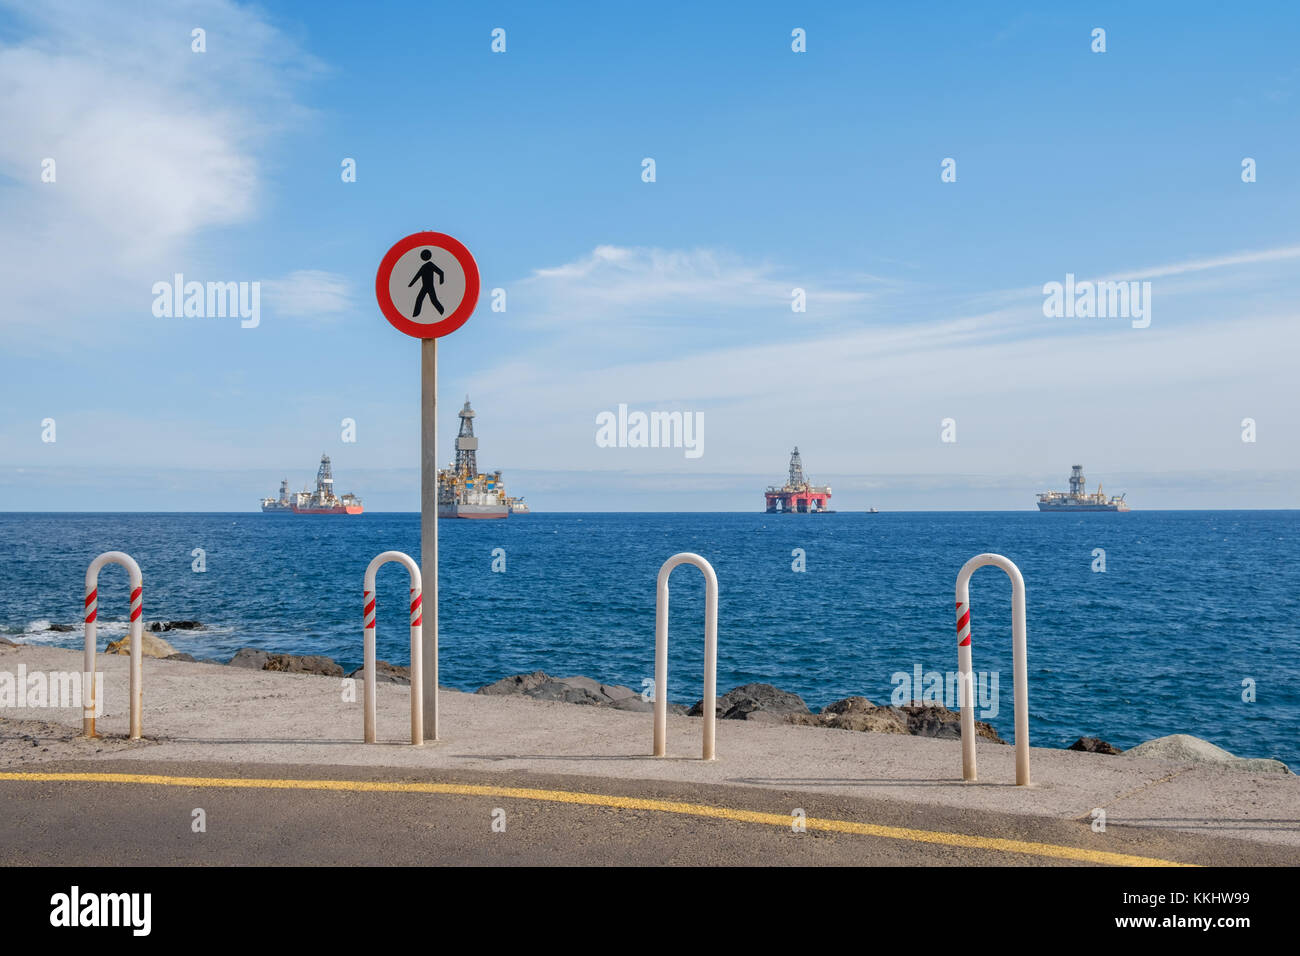 Keine Schuld am Ende der Straße mit Blick auf das Meer im Hintergrund, Offshore Drilling Ships und Plattform auf der Horizon Stockfoto